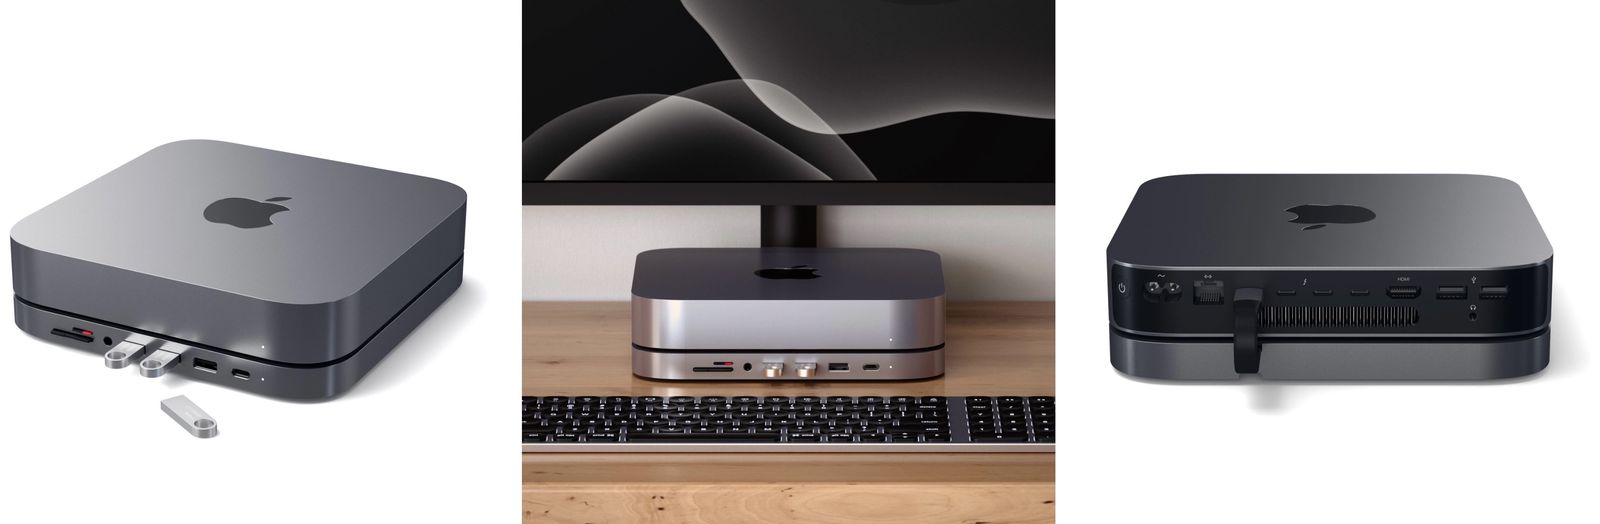 Satechi Launches Type-C Aluminum Stand and Hub for Mac Mini - MacRumors